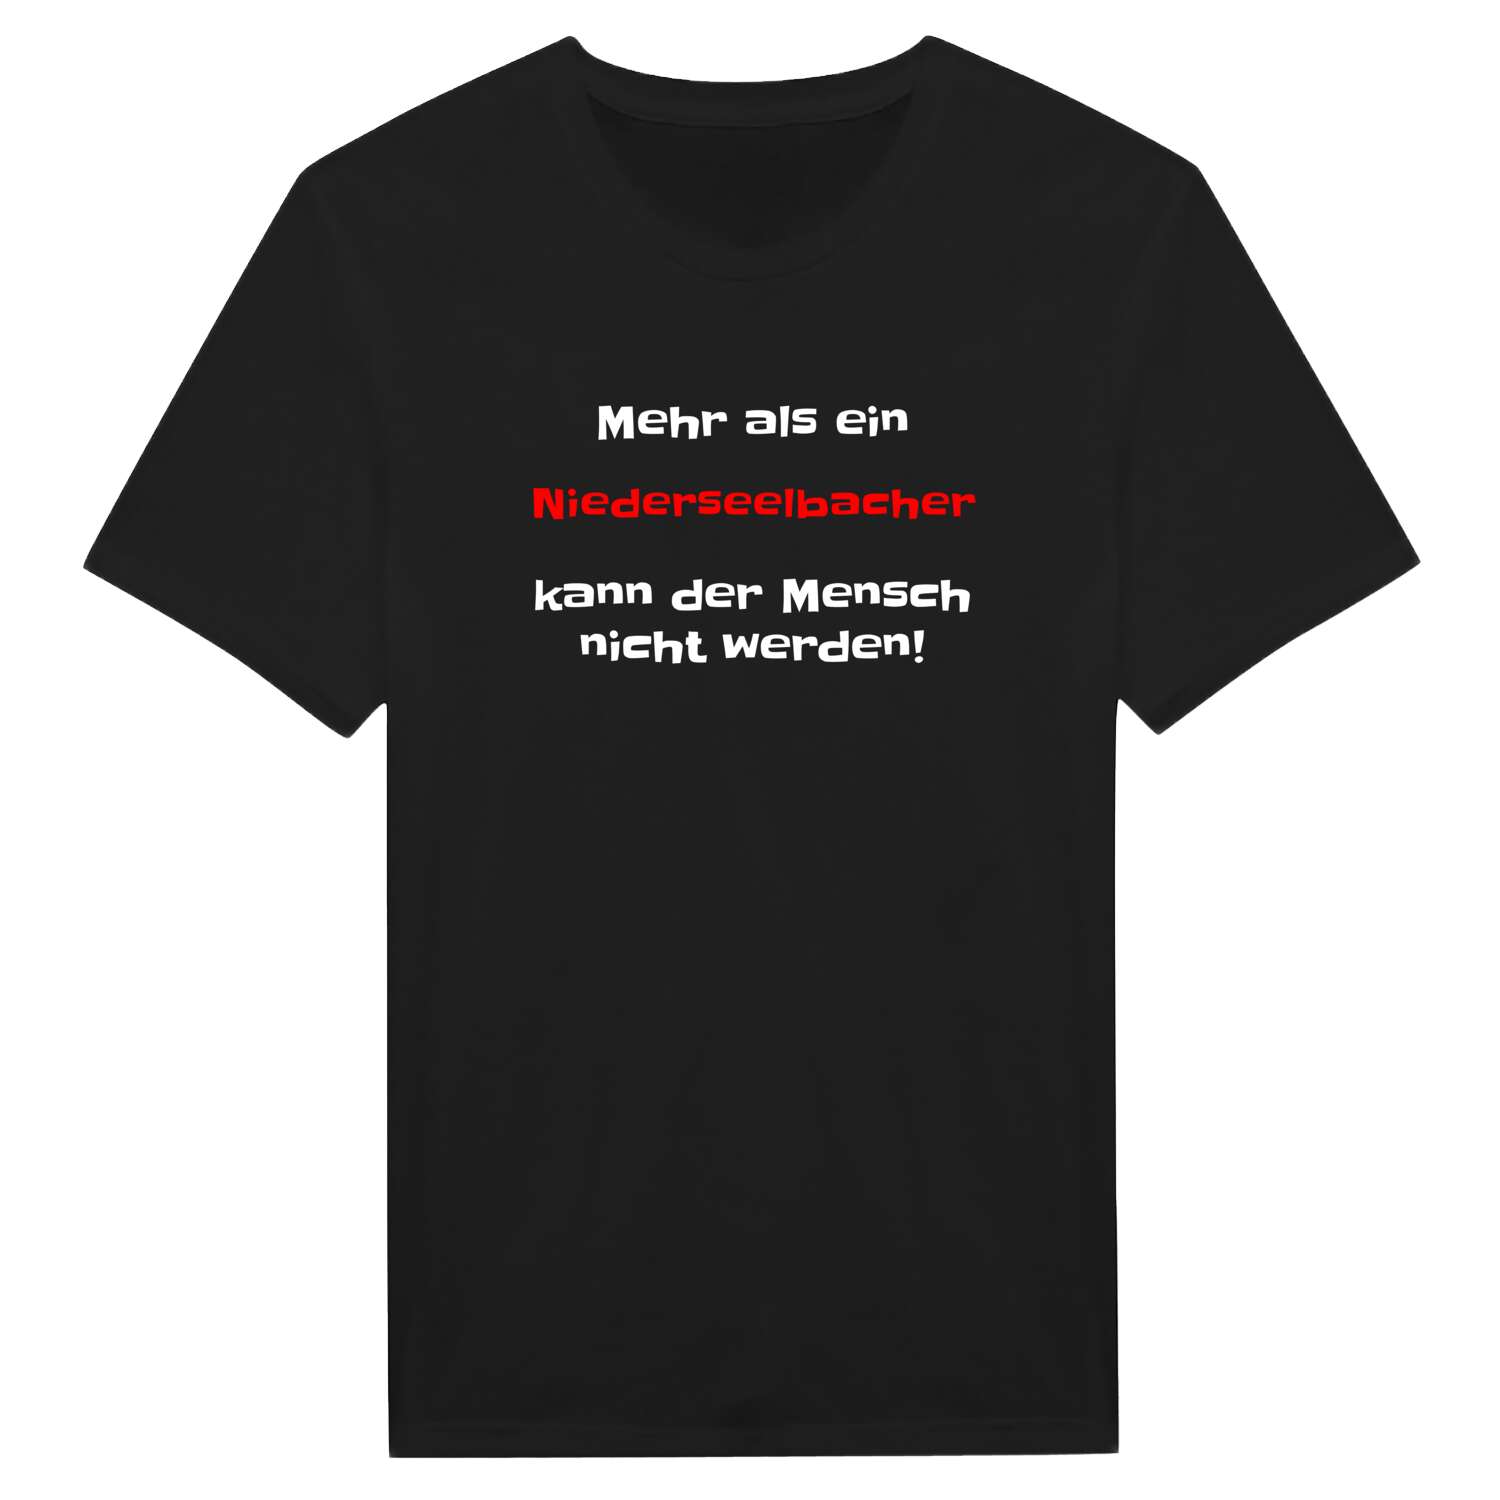 Niederseelbach T-Shirt »Mehr als ein«